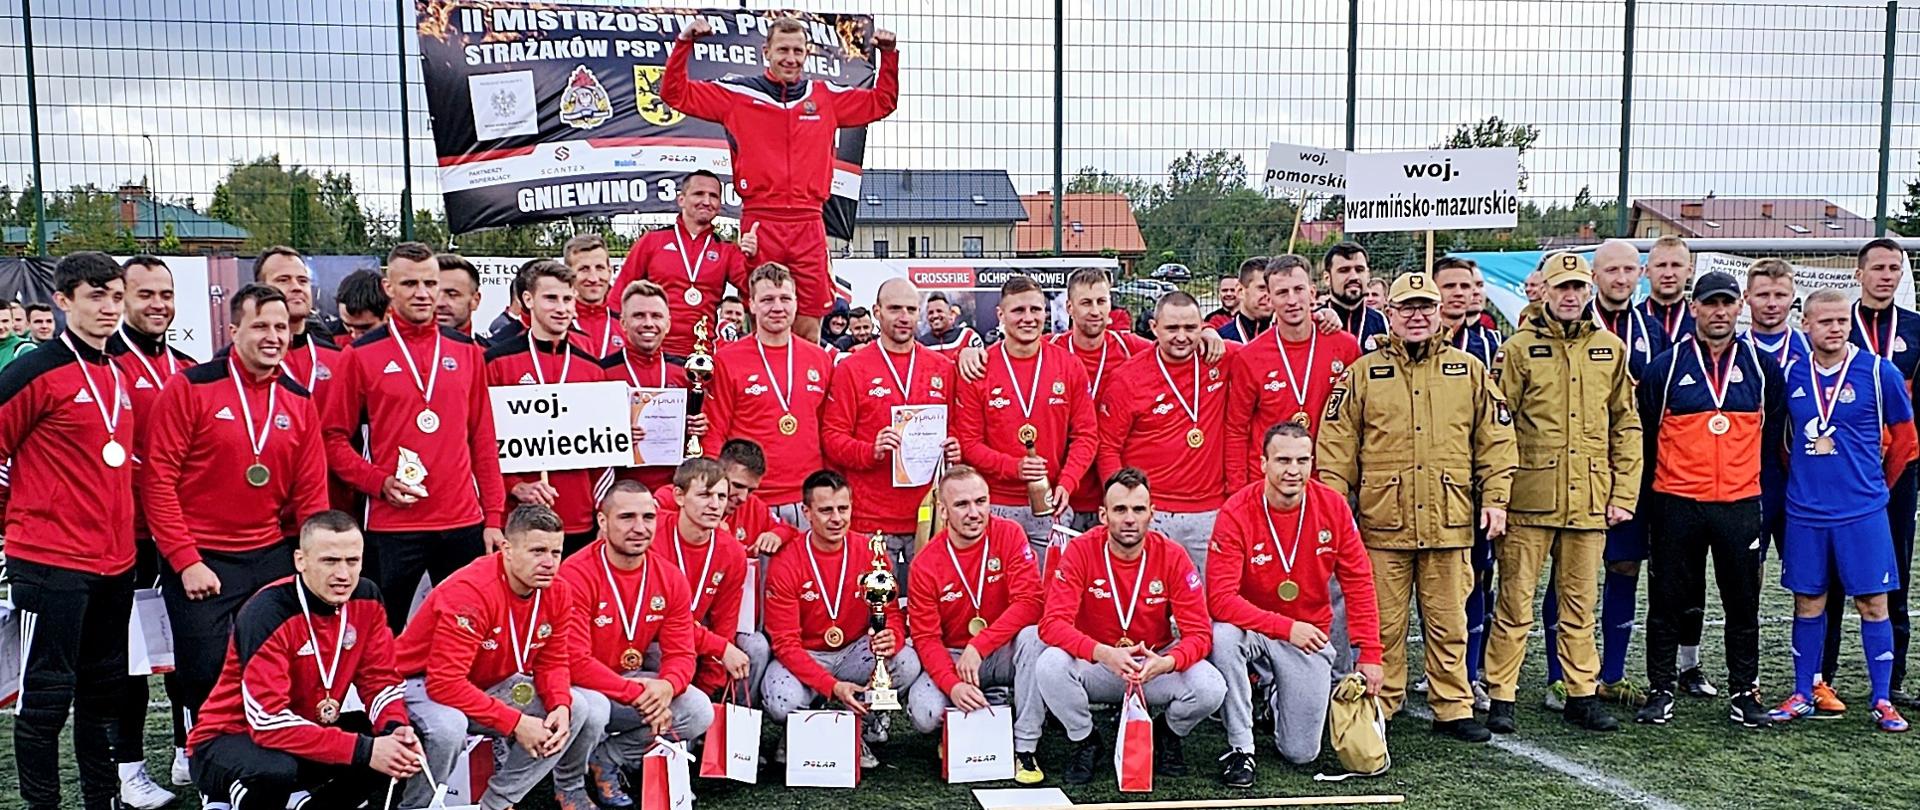 II Mistrzostwa Polski strażaków w piłce nożnej sześcioosobowej – Mazowsze na 2. miejscu!